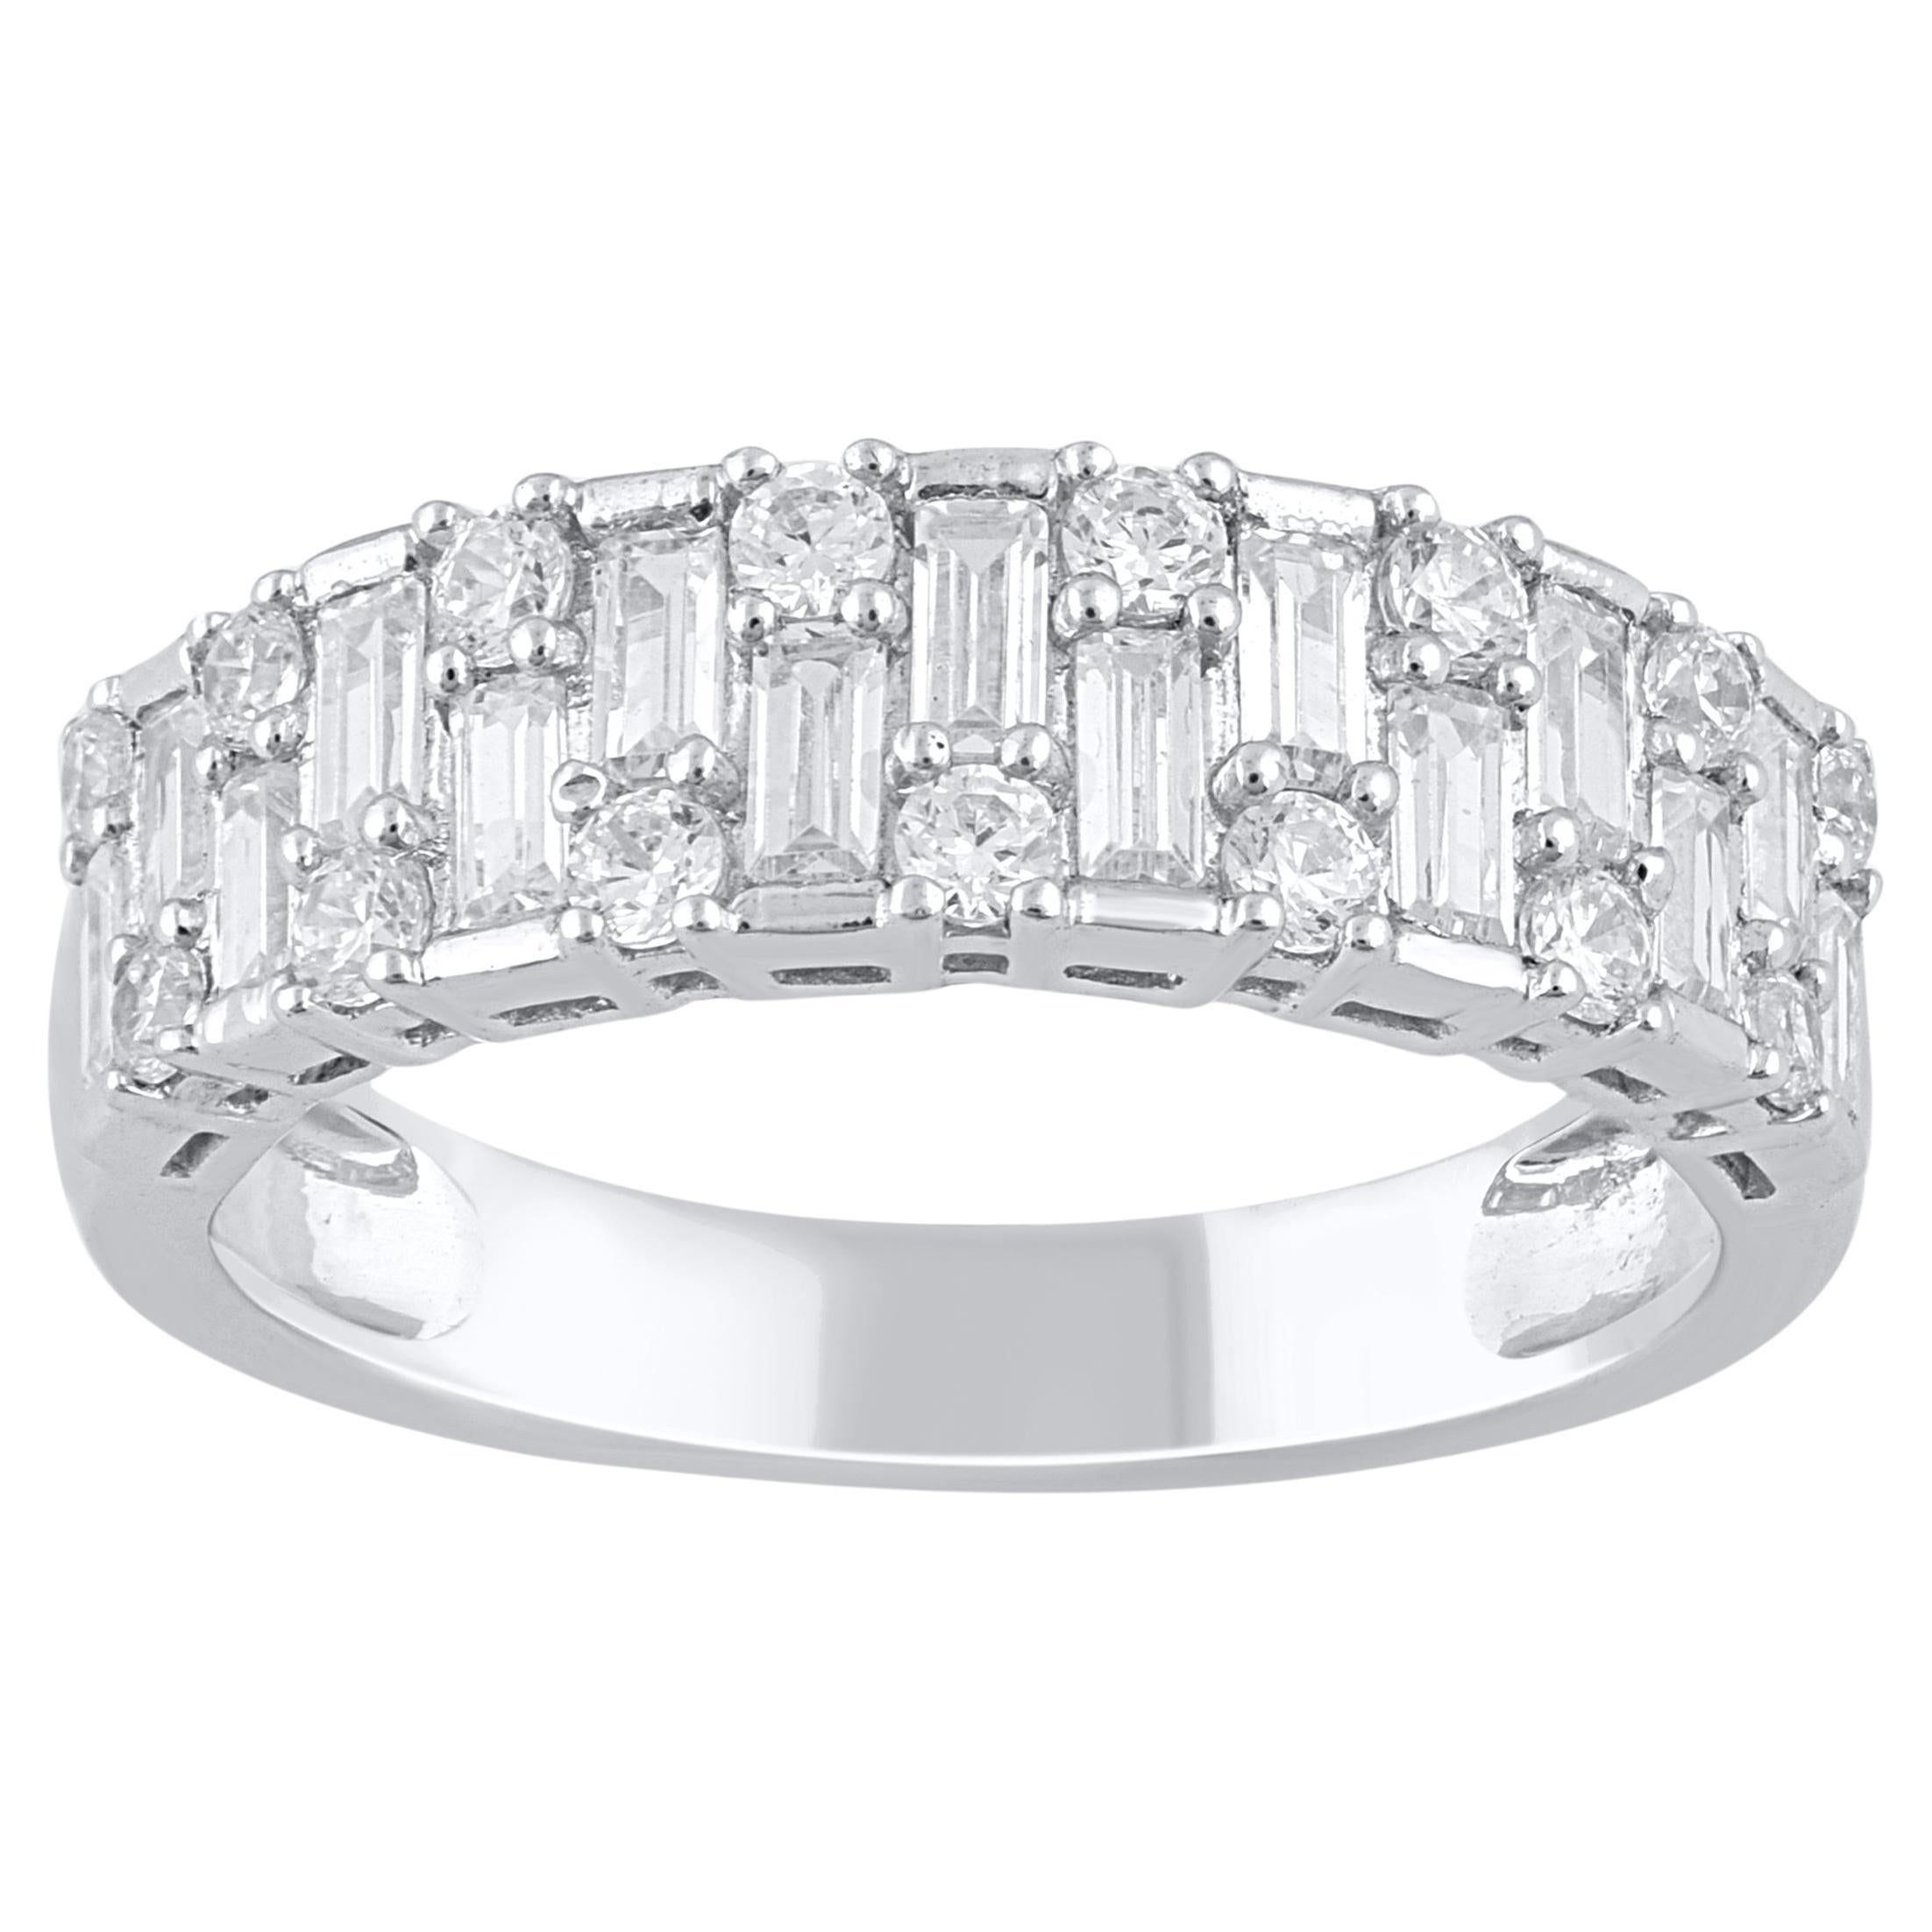 TJD 1.0 Carat Natural Diamond 14 Karat White Gold Wedding Band Ring